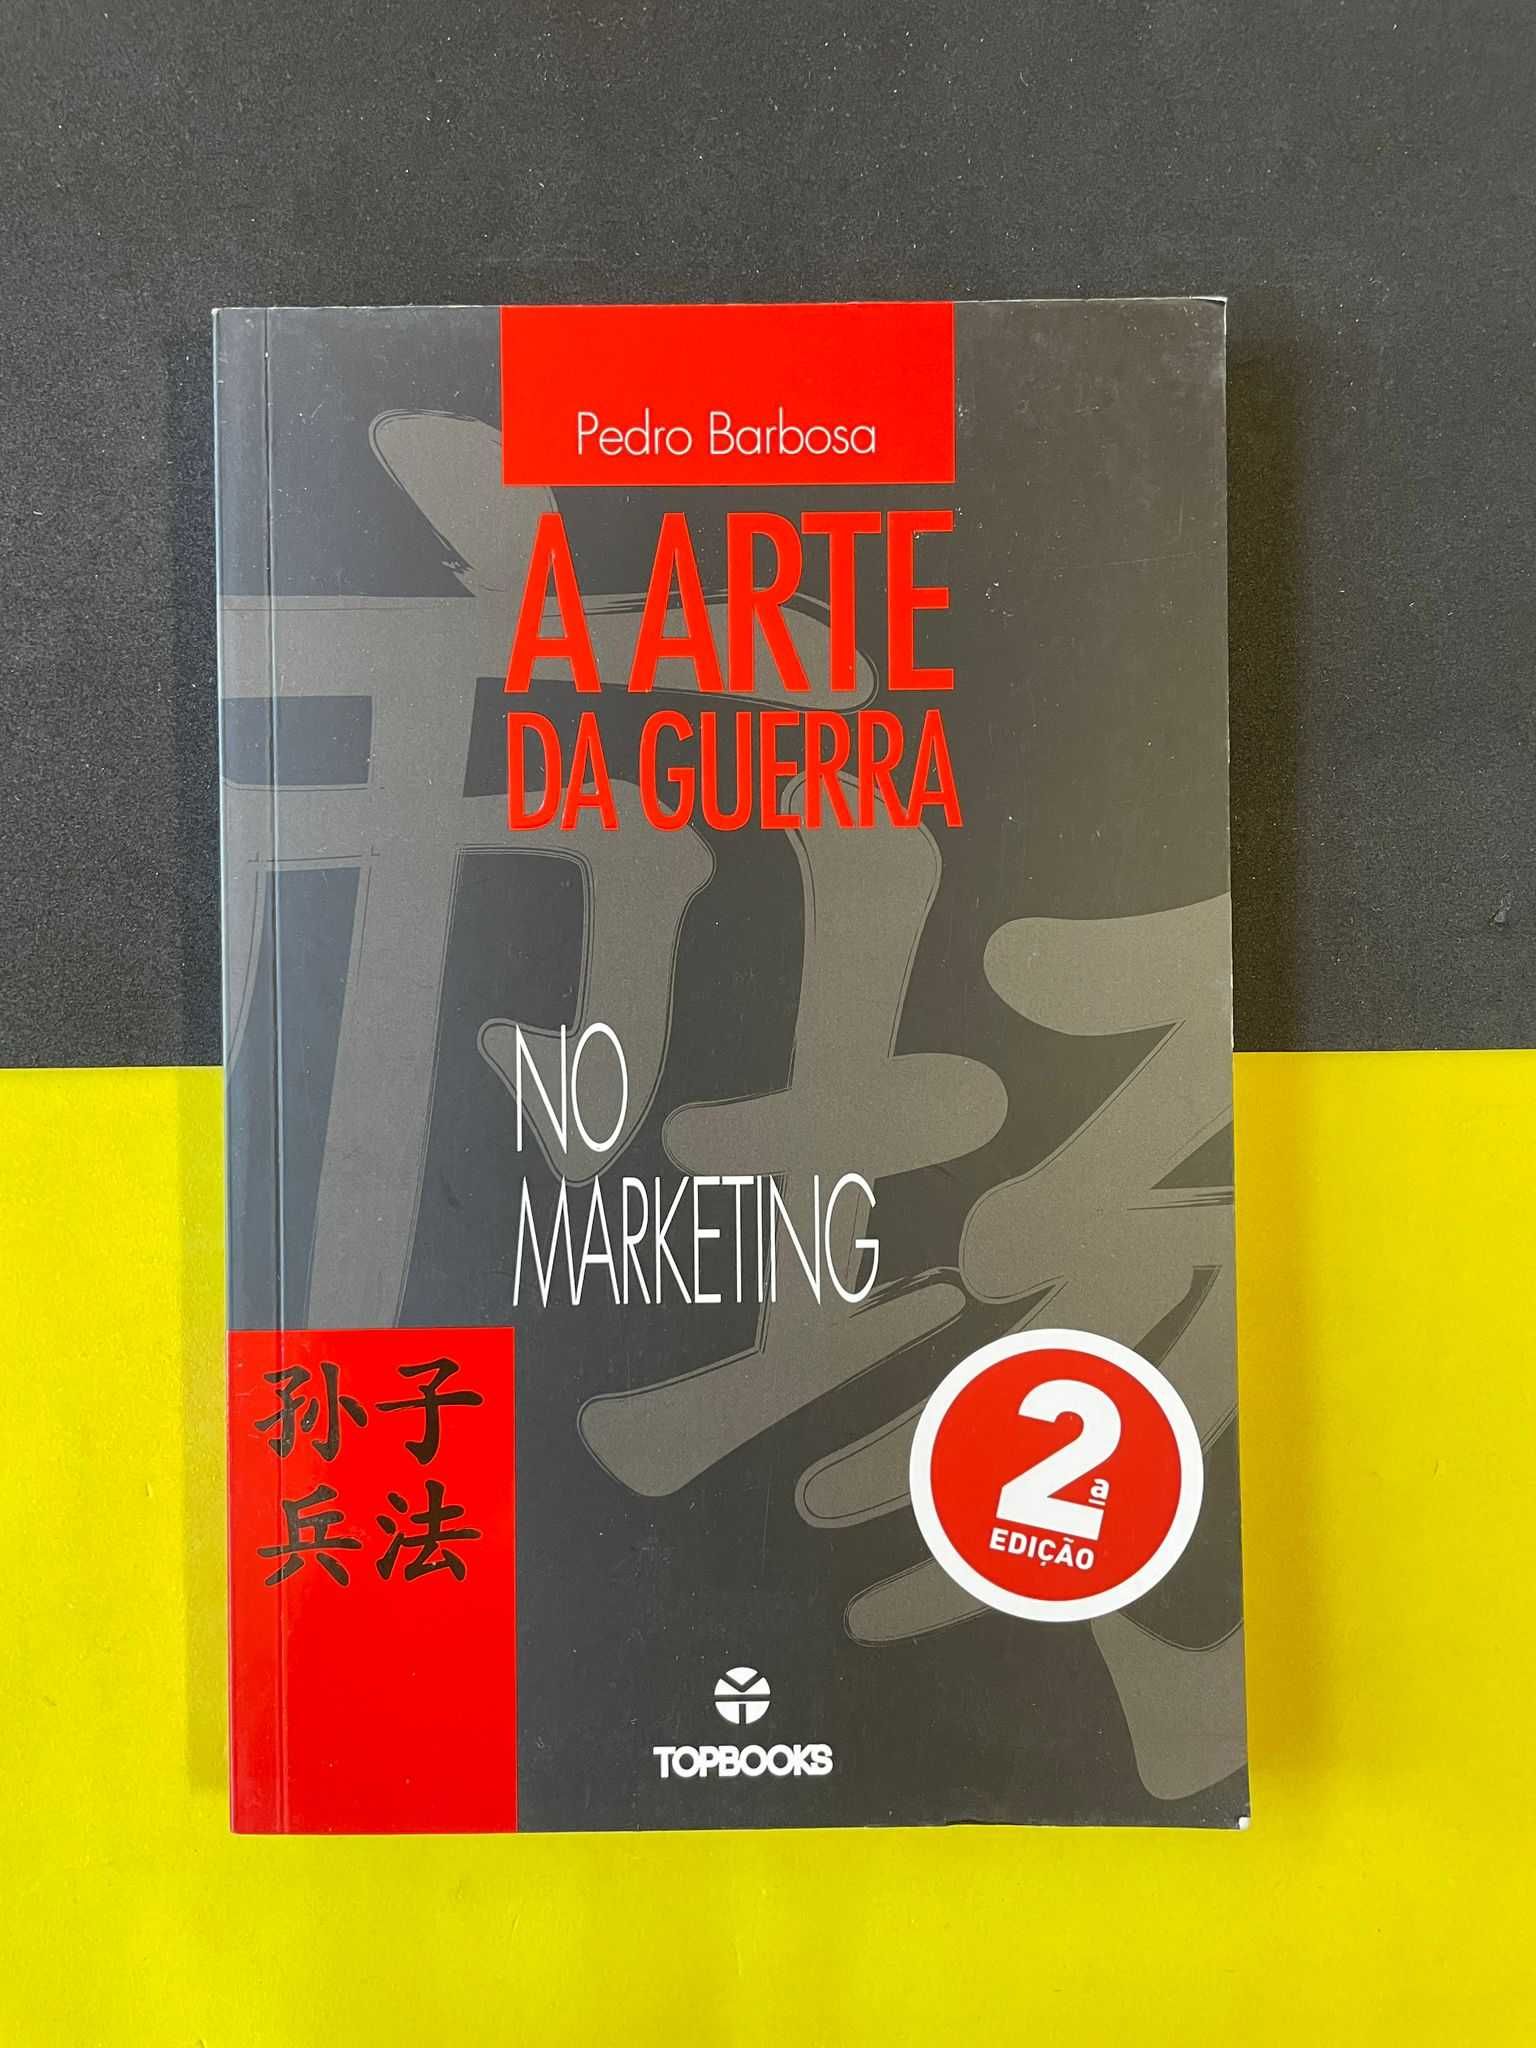 Pedro Barbosa - A Arte da Guerra no Marketing